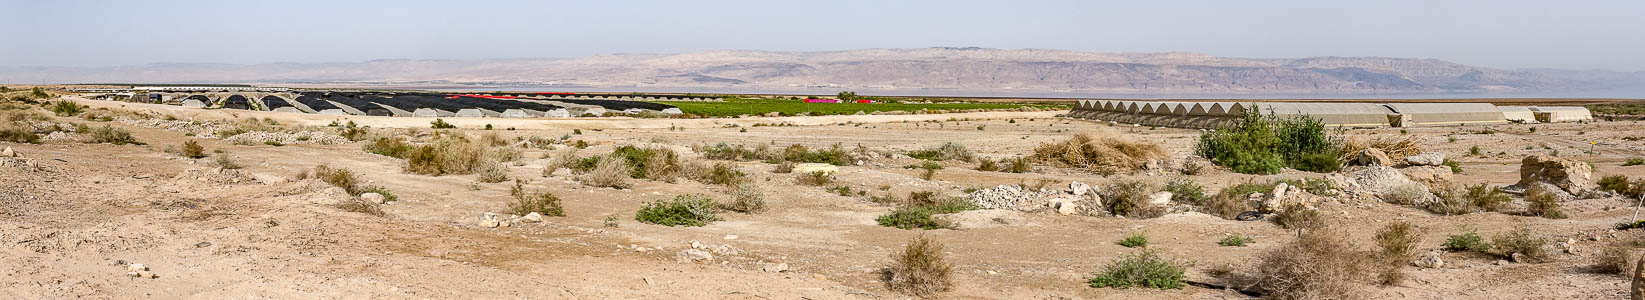 Qumran Jordantal mit Obstplantagen